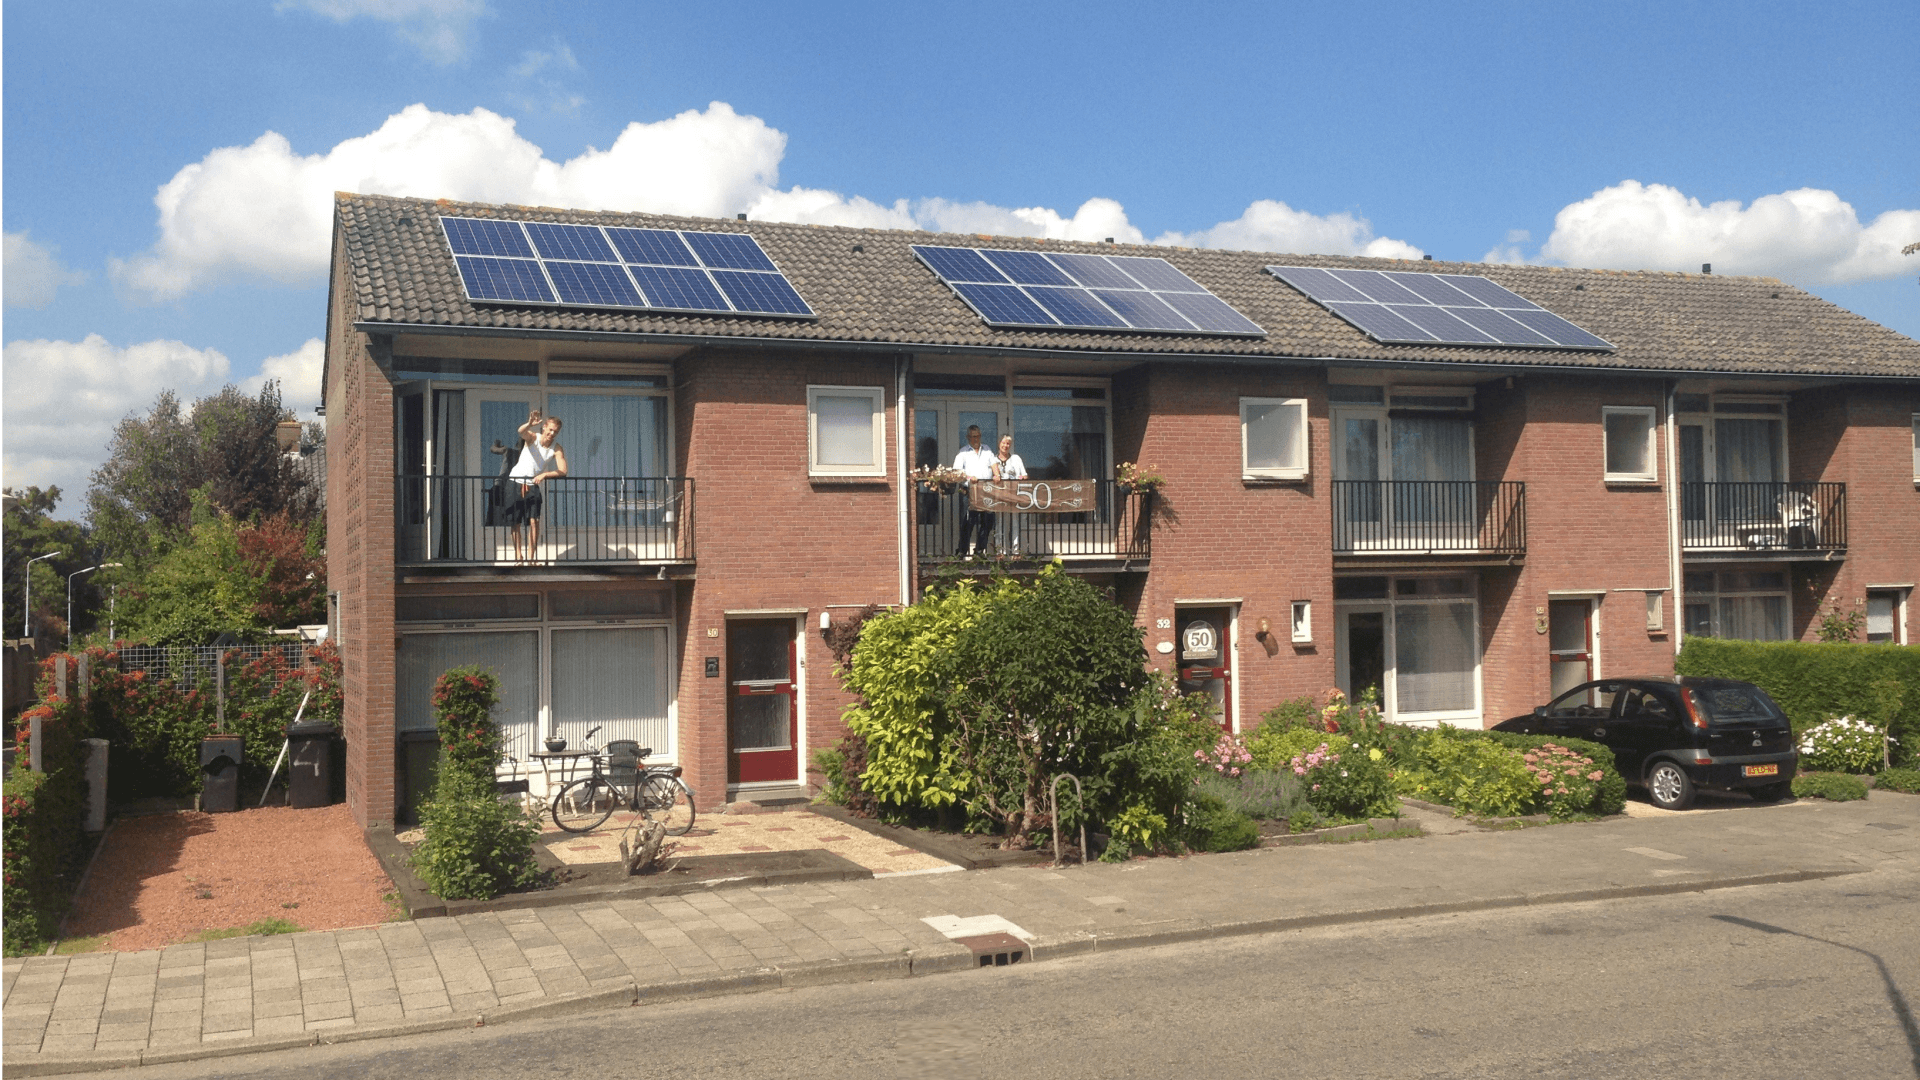 bewoners op balkon van rijtjeshuizen met zonnepanelen